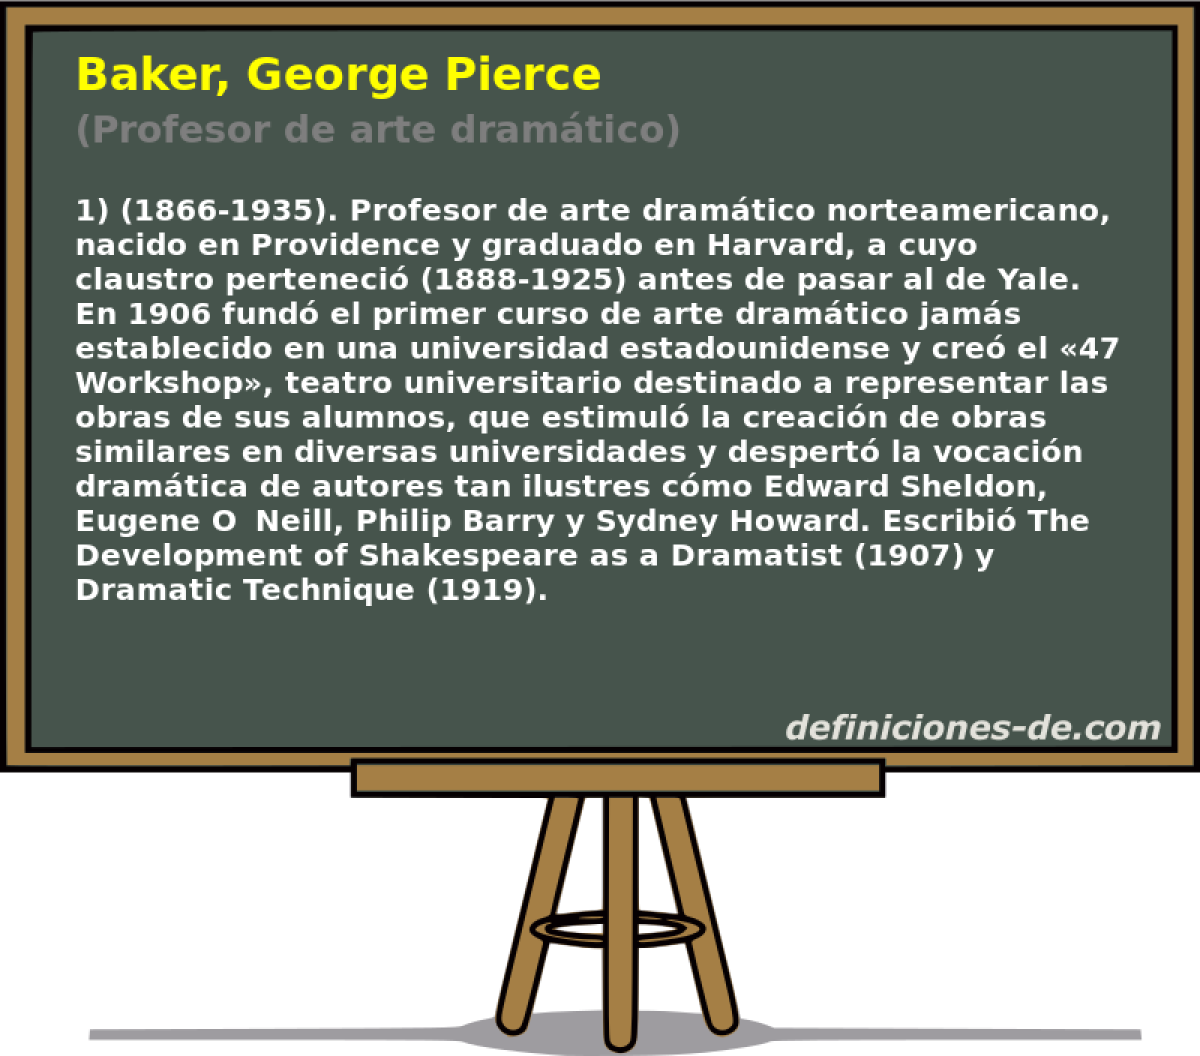 Baker, George Pierce (Profesor de arte dramtico)